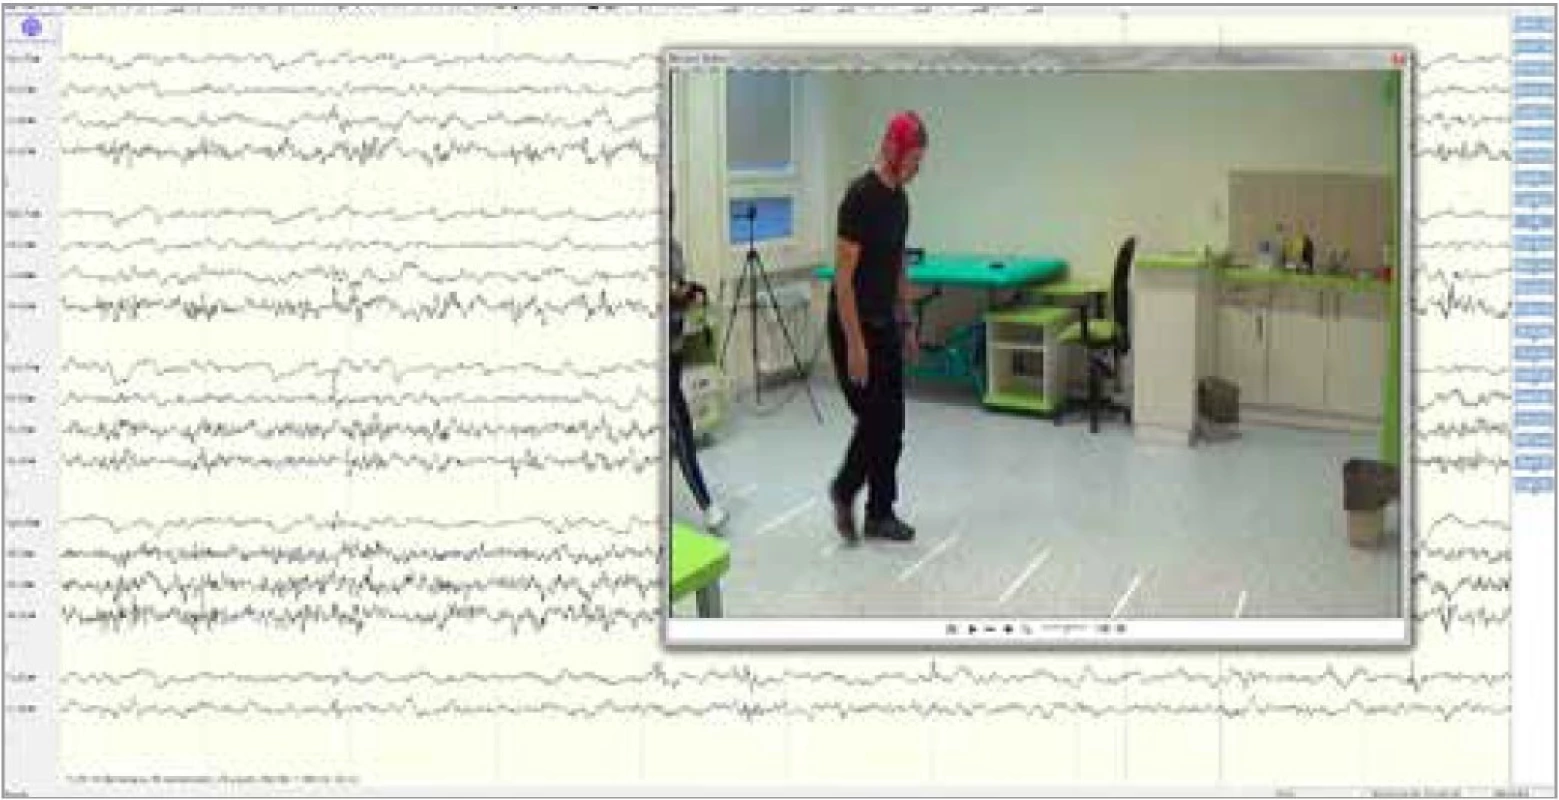 Ukázka z měření EEG při chůzi facilitované zevním zrakovým podnětem
u pacienta s Parkinsonovou nemocí. Zdroj: archiv autorky.<br>
Fig. 1. A demonstration of EEG recording during walking facilitated by external
visual cue in Parkinson’s disease patient. Source: author’s archive.